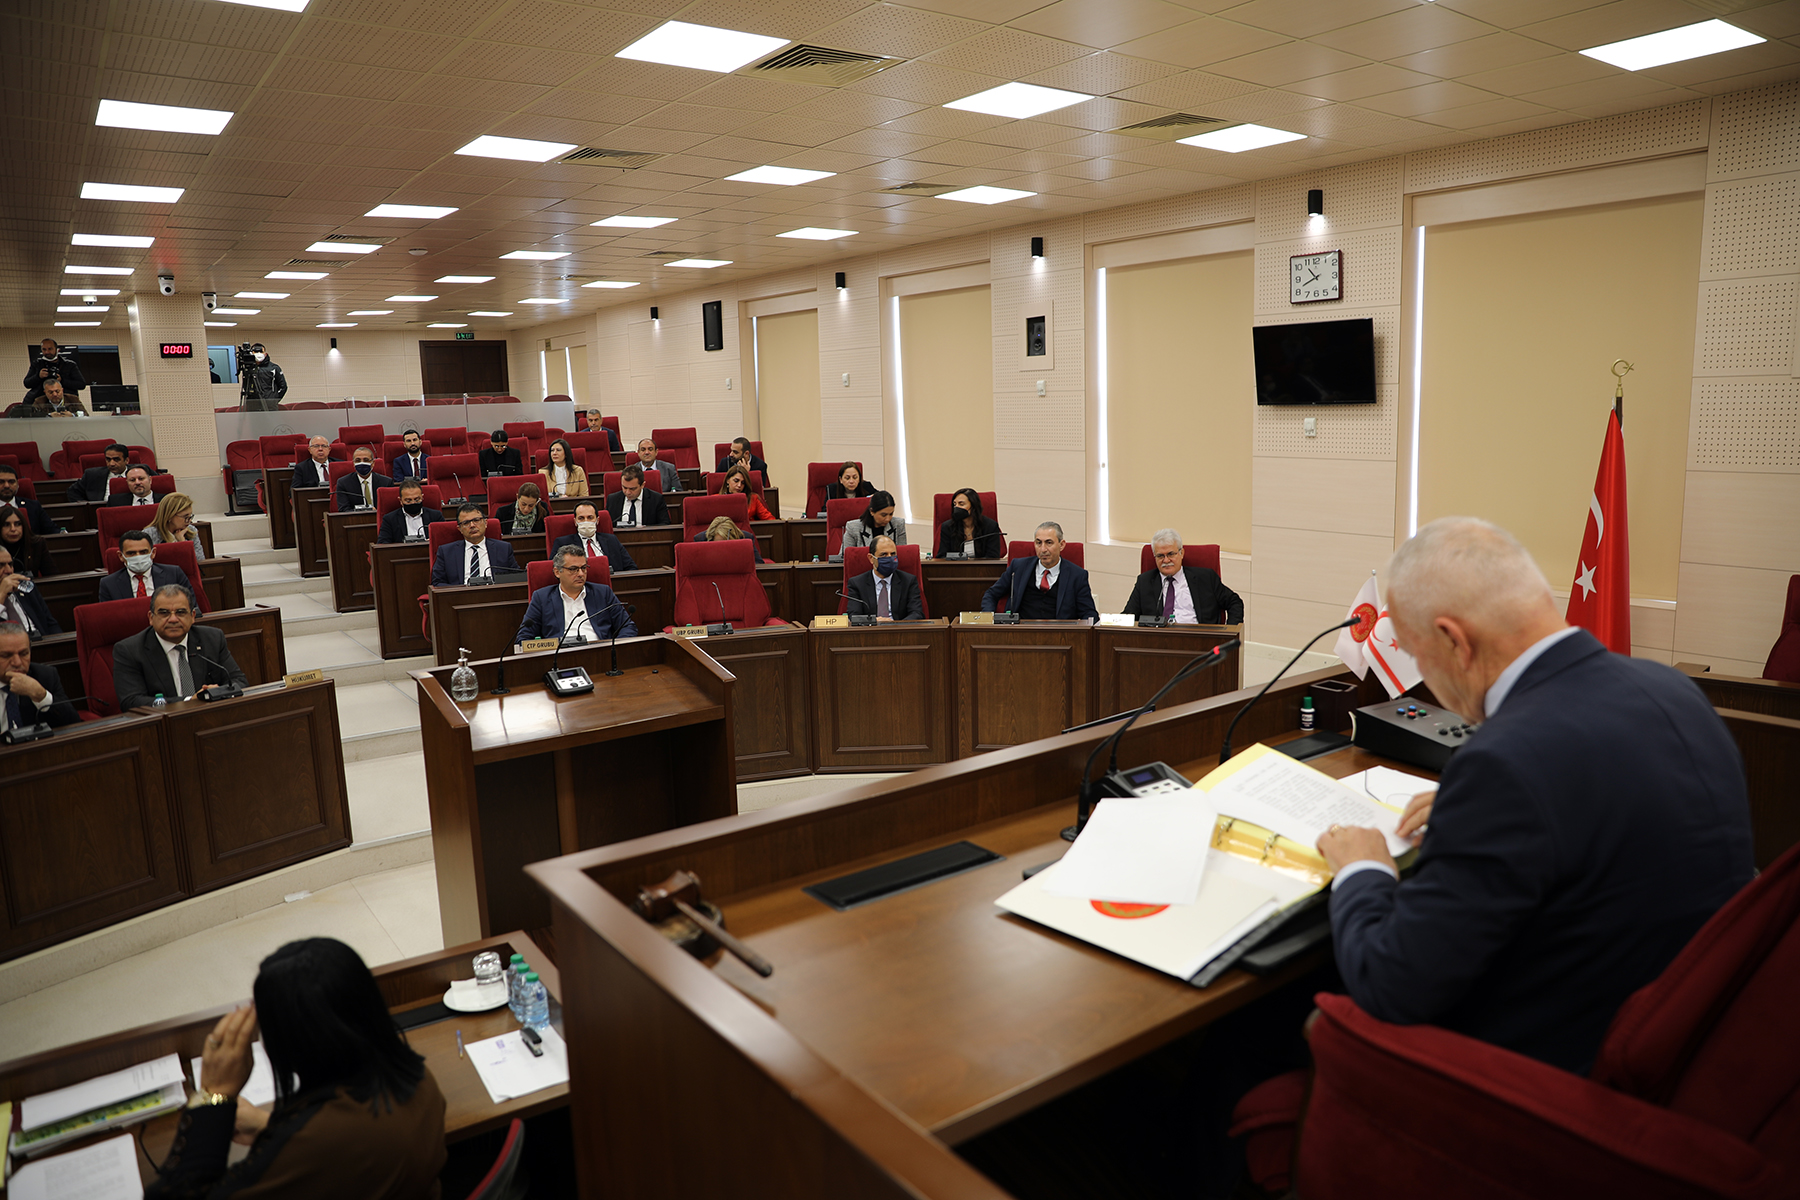 “Belediyelerin Birleştirilmesine İlişkin (Özel) Yasa Tasarısı” Meclis Genel Kurulunda oy çokluğu ile kabul edildi